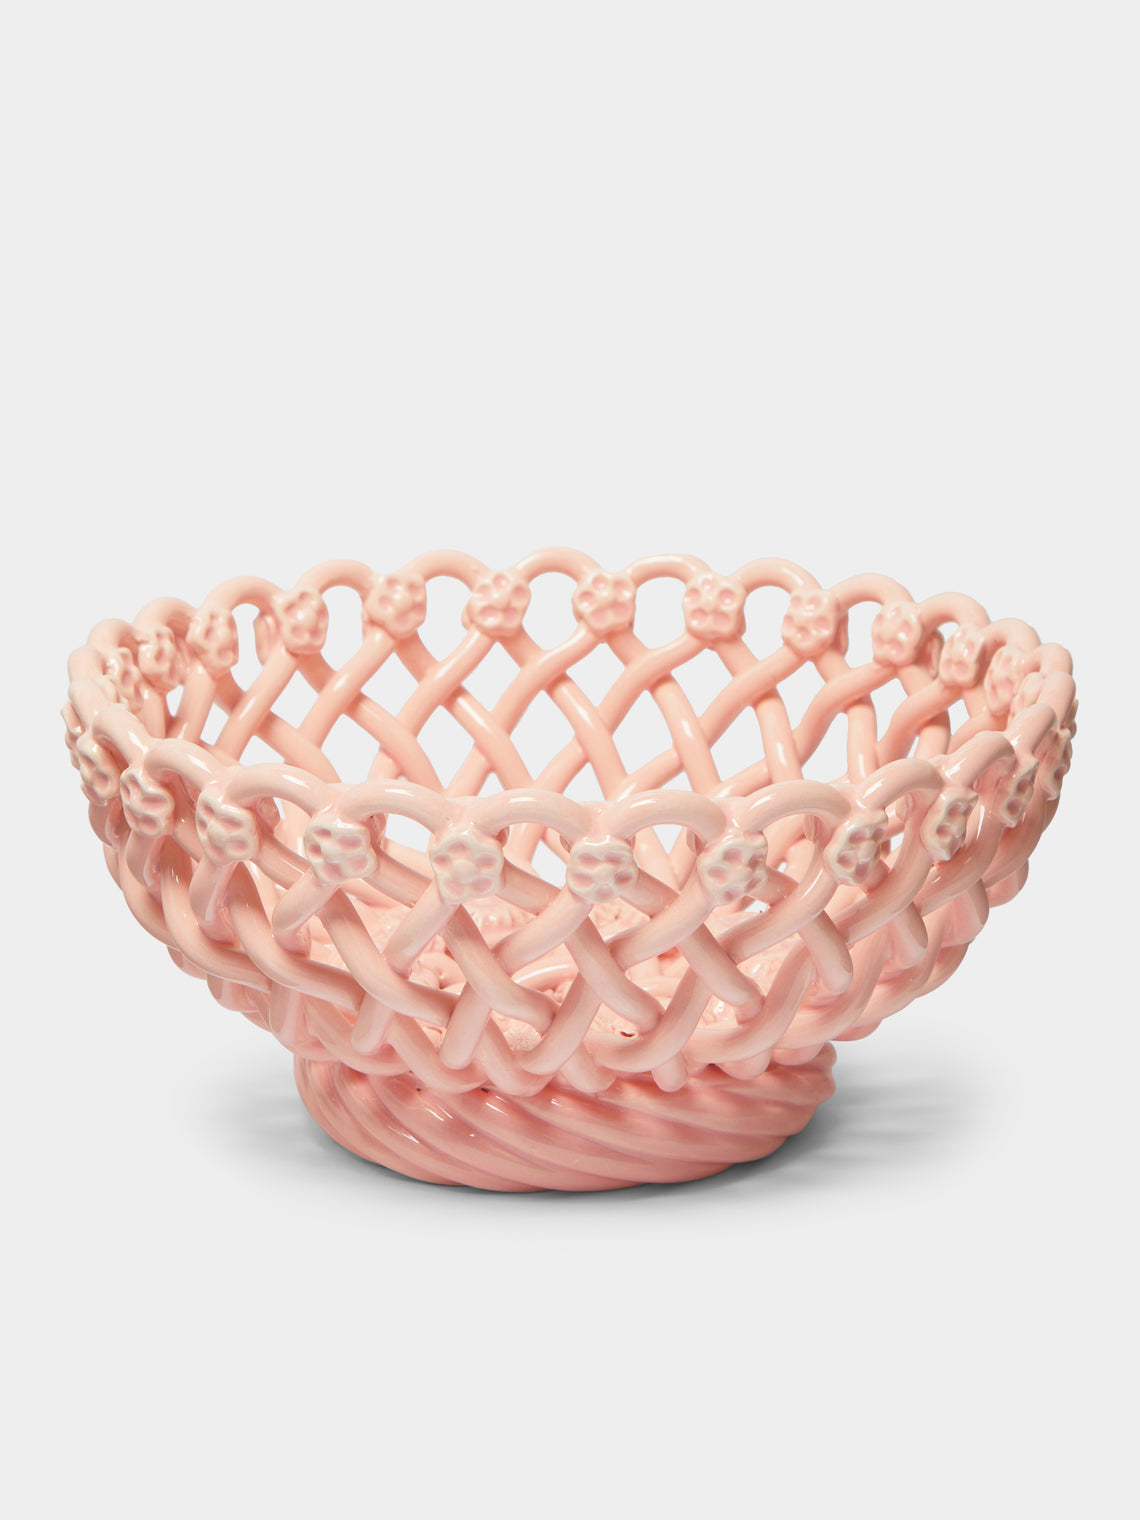 Maison Pichon Uzès - Hand-Glazed Ceramic Braided Serving Bowl -  - ABASK - 